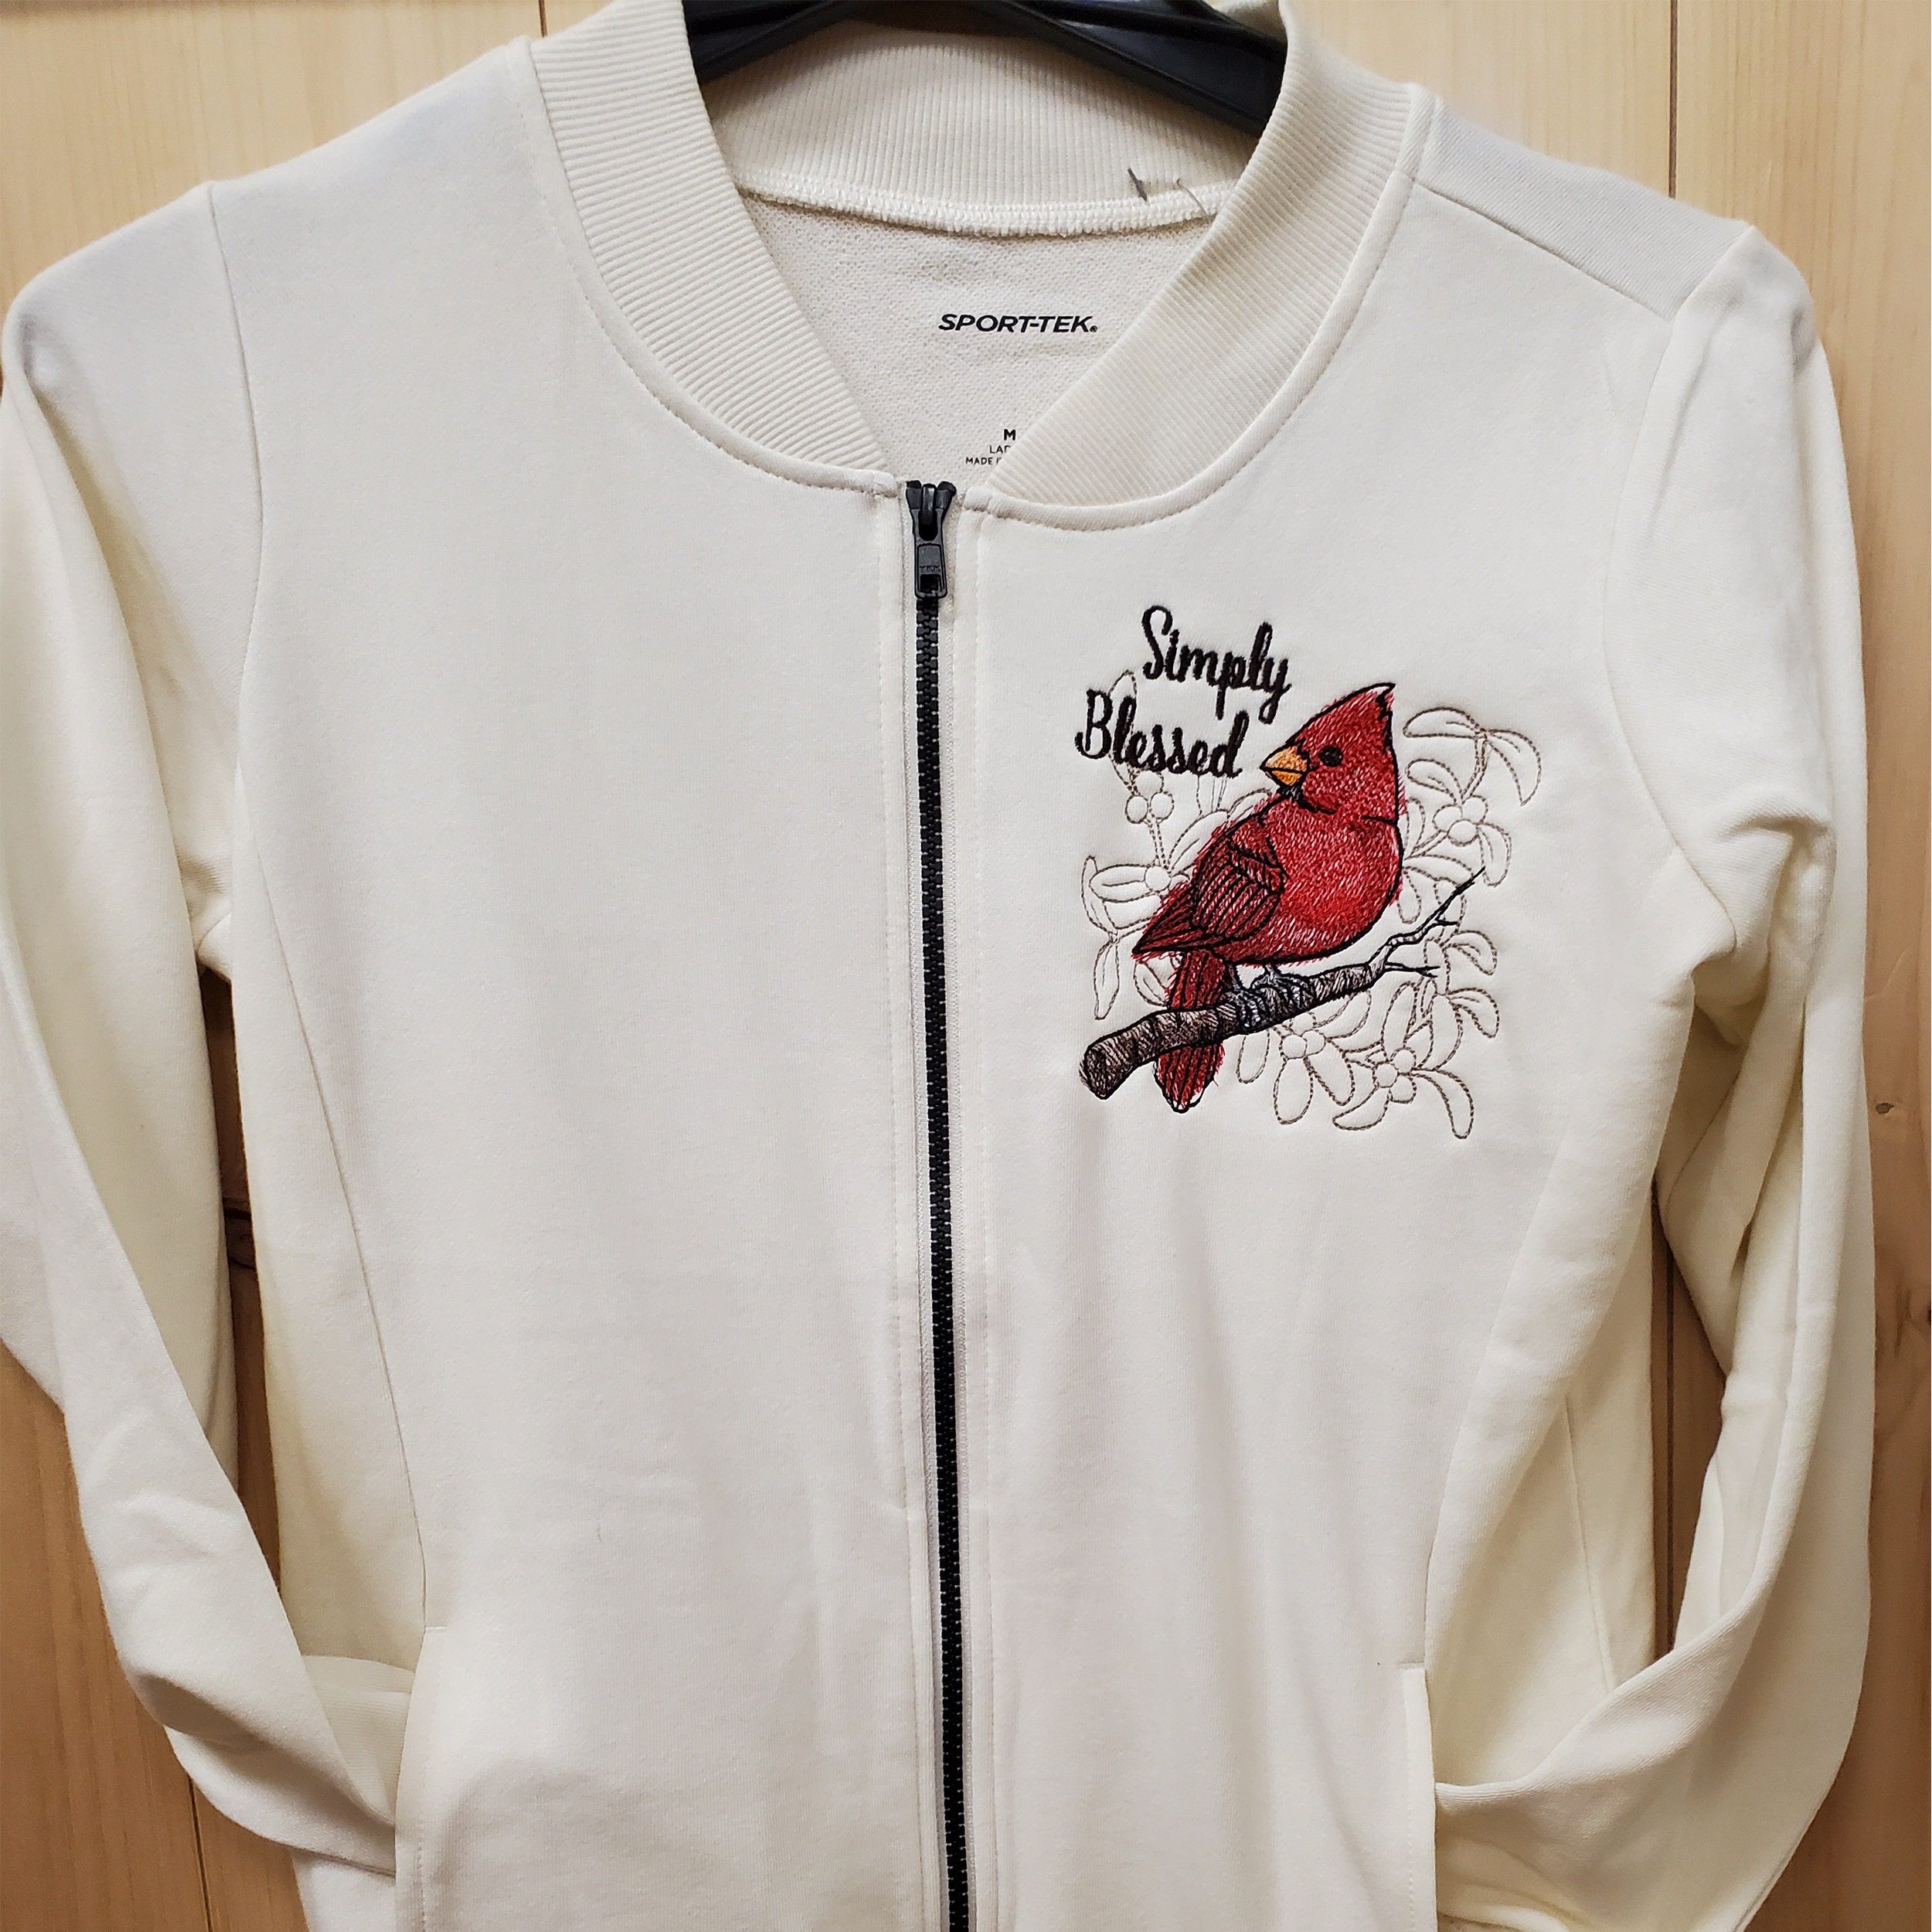 20% OFF Men's Louisville Cardinals Jacket 3D Printed Plus Size 4XL 5XL – 4  Fan Shop